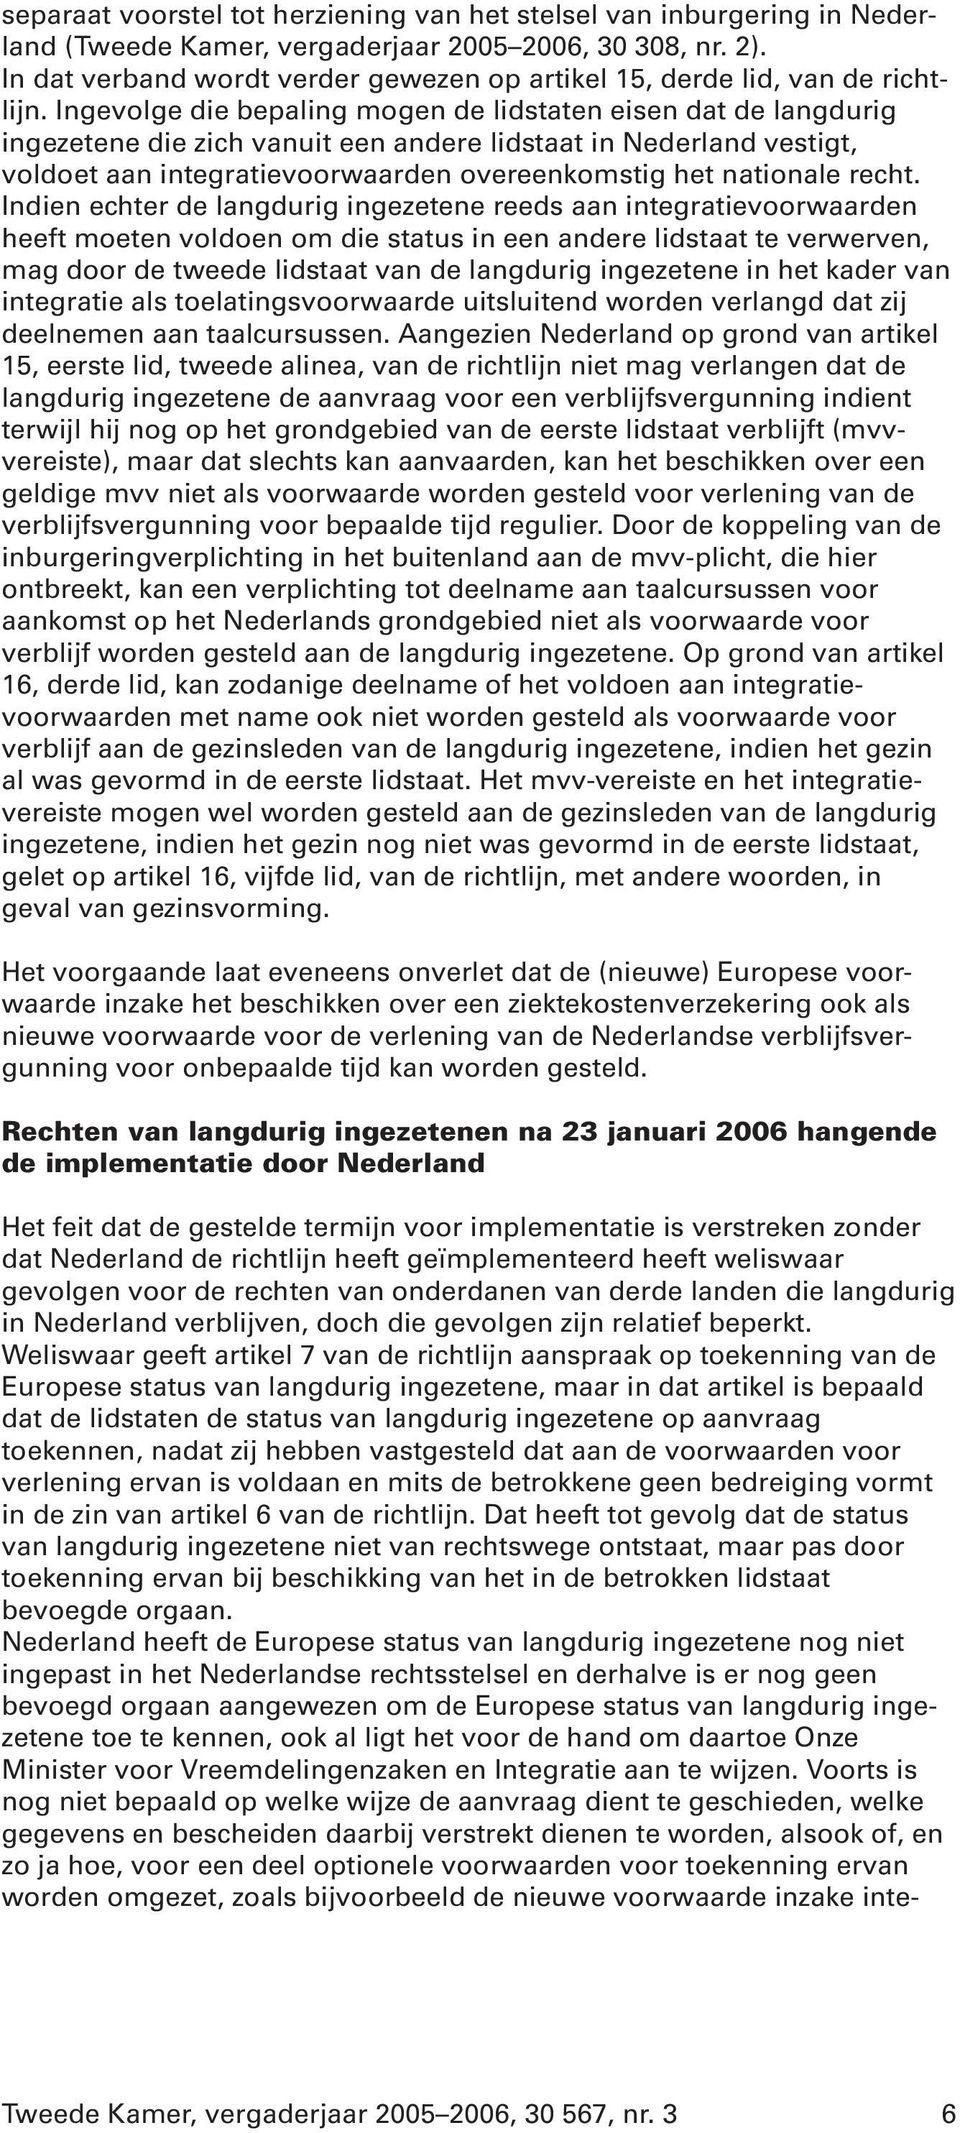 Ingevolge die bepaling mogen de lidstaten eisen dat de langdurig ingezetene die zich vanuit een andere lidstaat in Nederland vestigt, voldoet aan integratievoorwaarden overeenkomstig het nationale